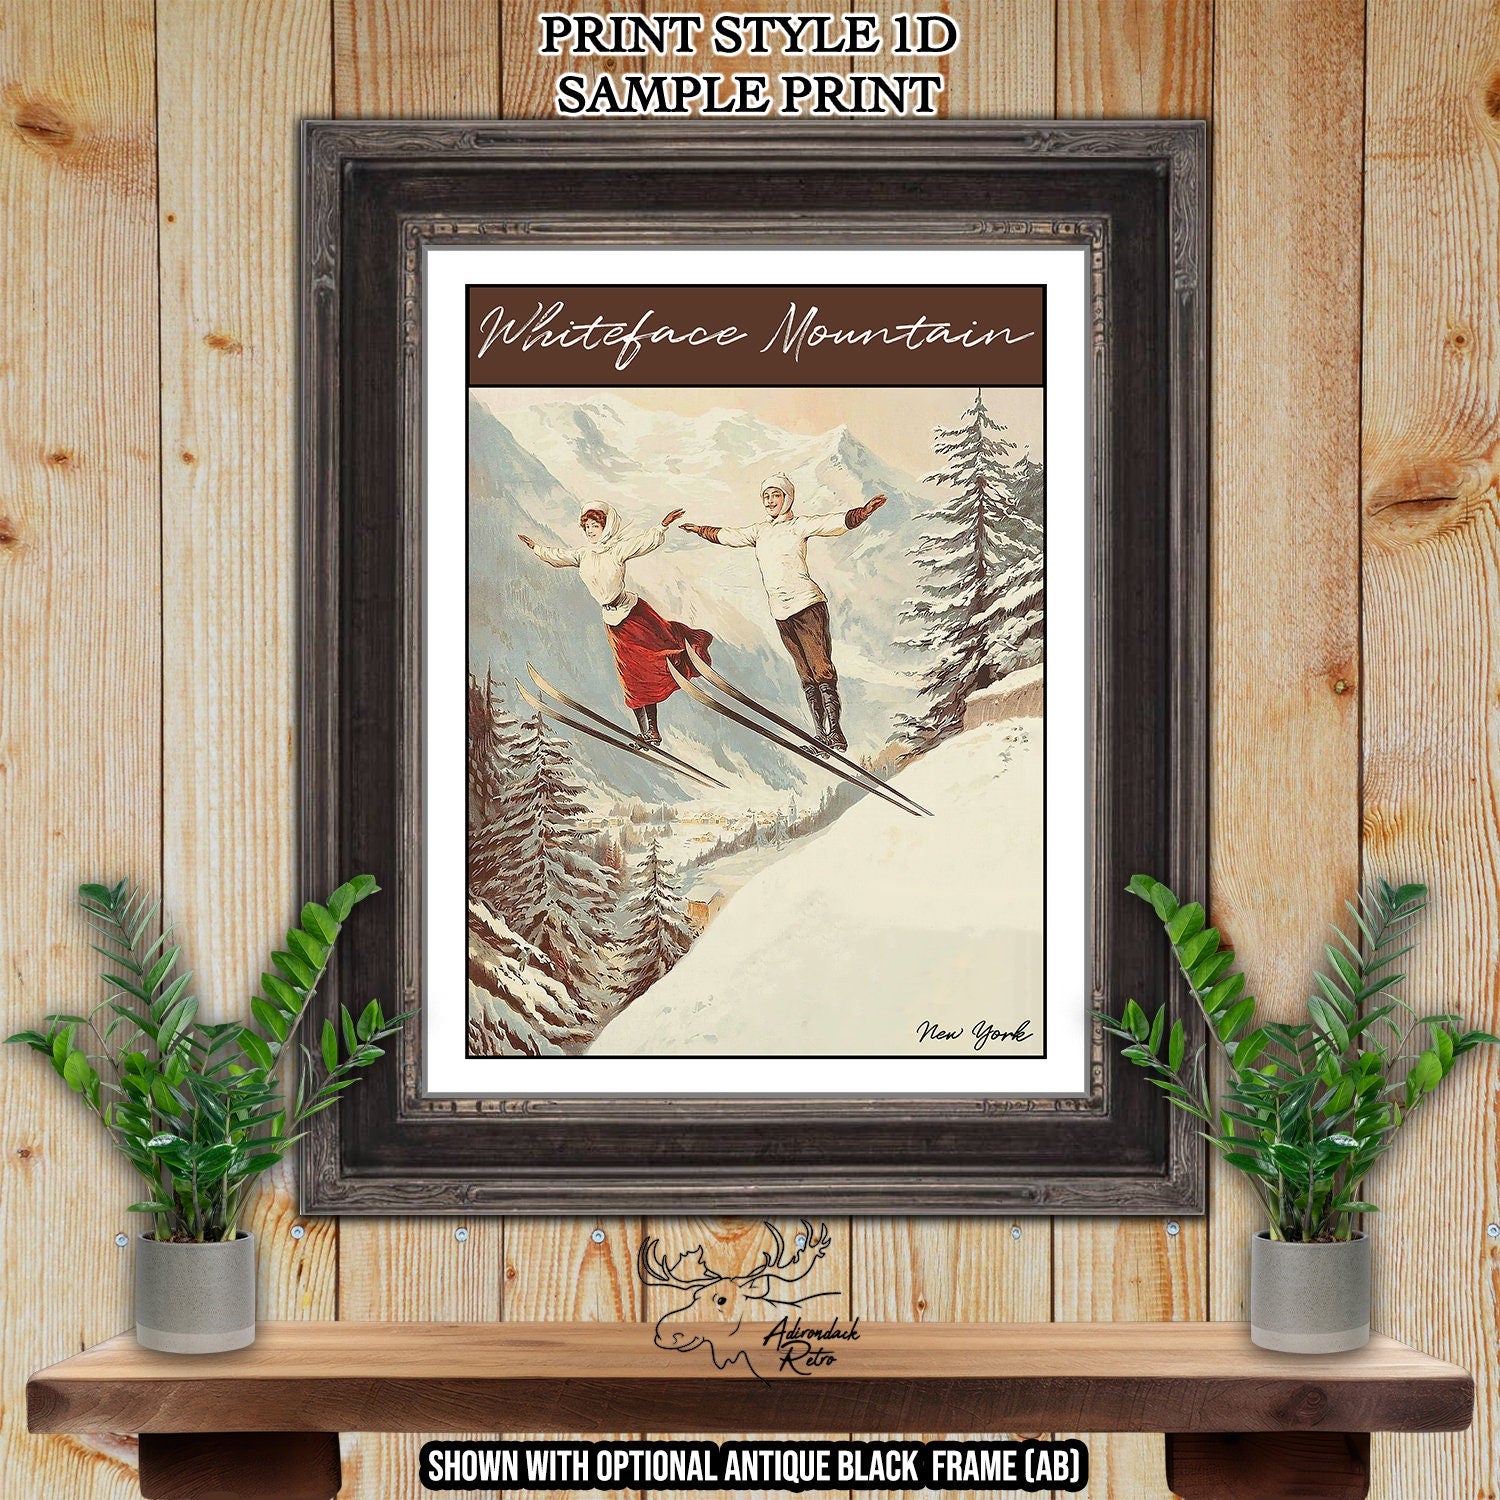 Wildcat Mountain New Hampshire Retro Ski Resort Print